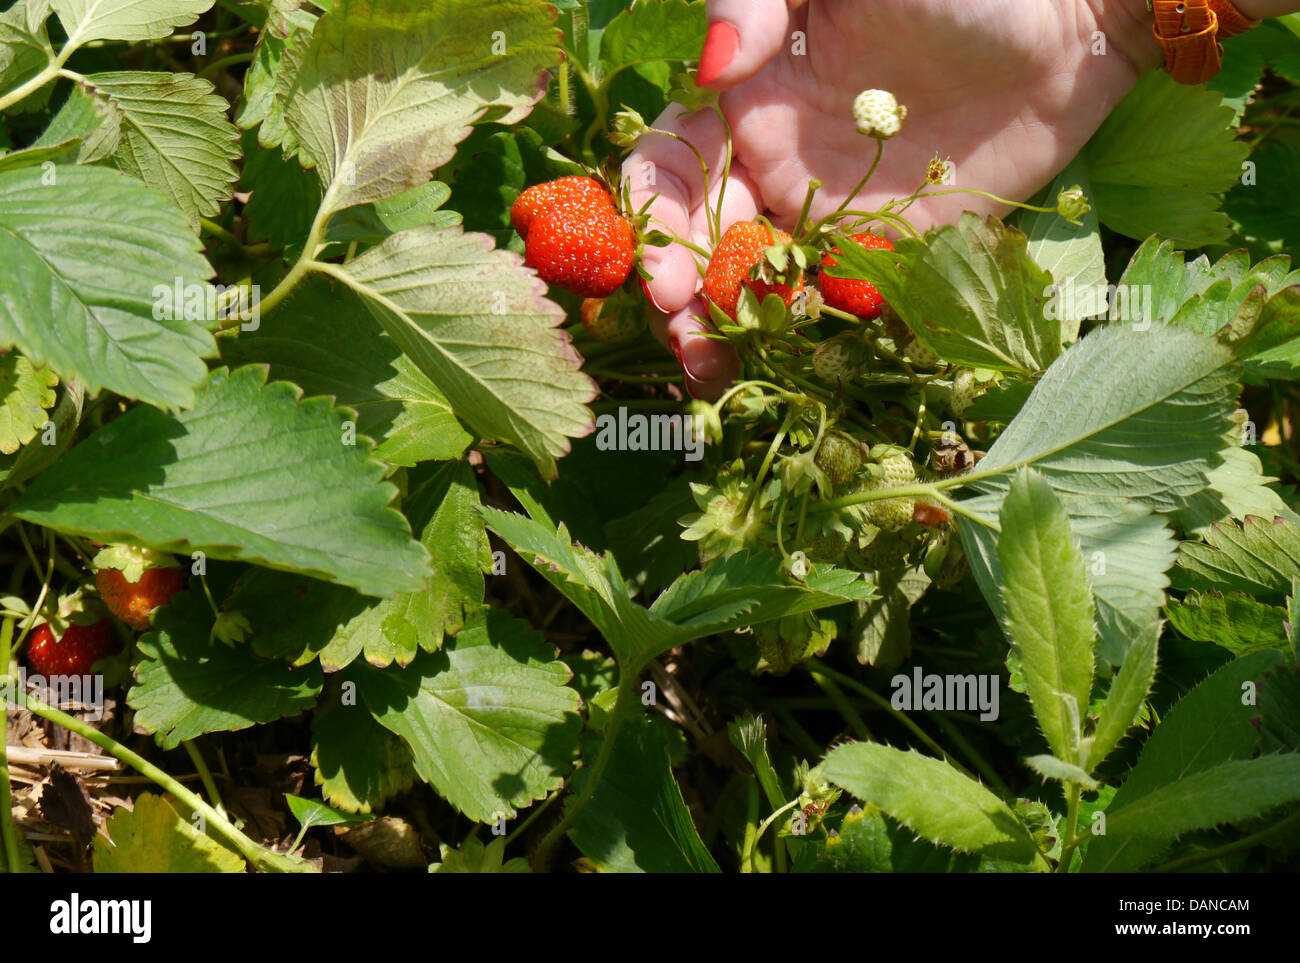 Mujer joven recogiendo fresas en una granja durante el verano Foto de stock